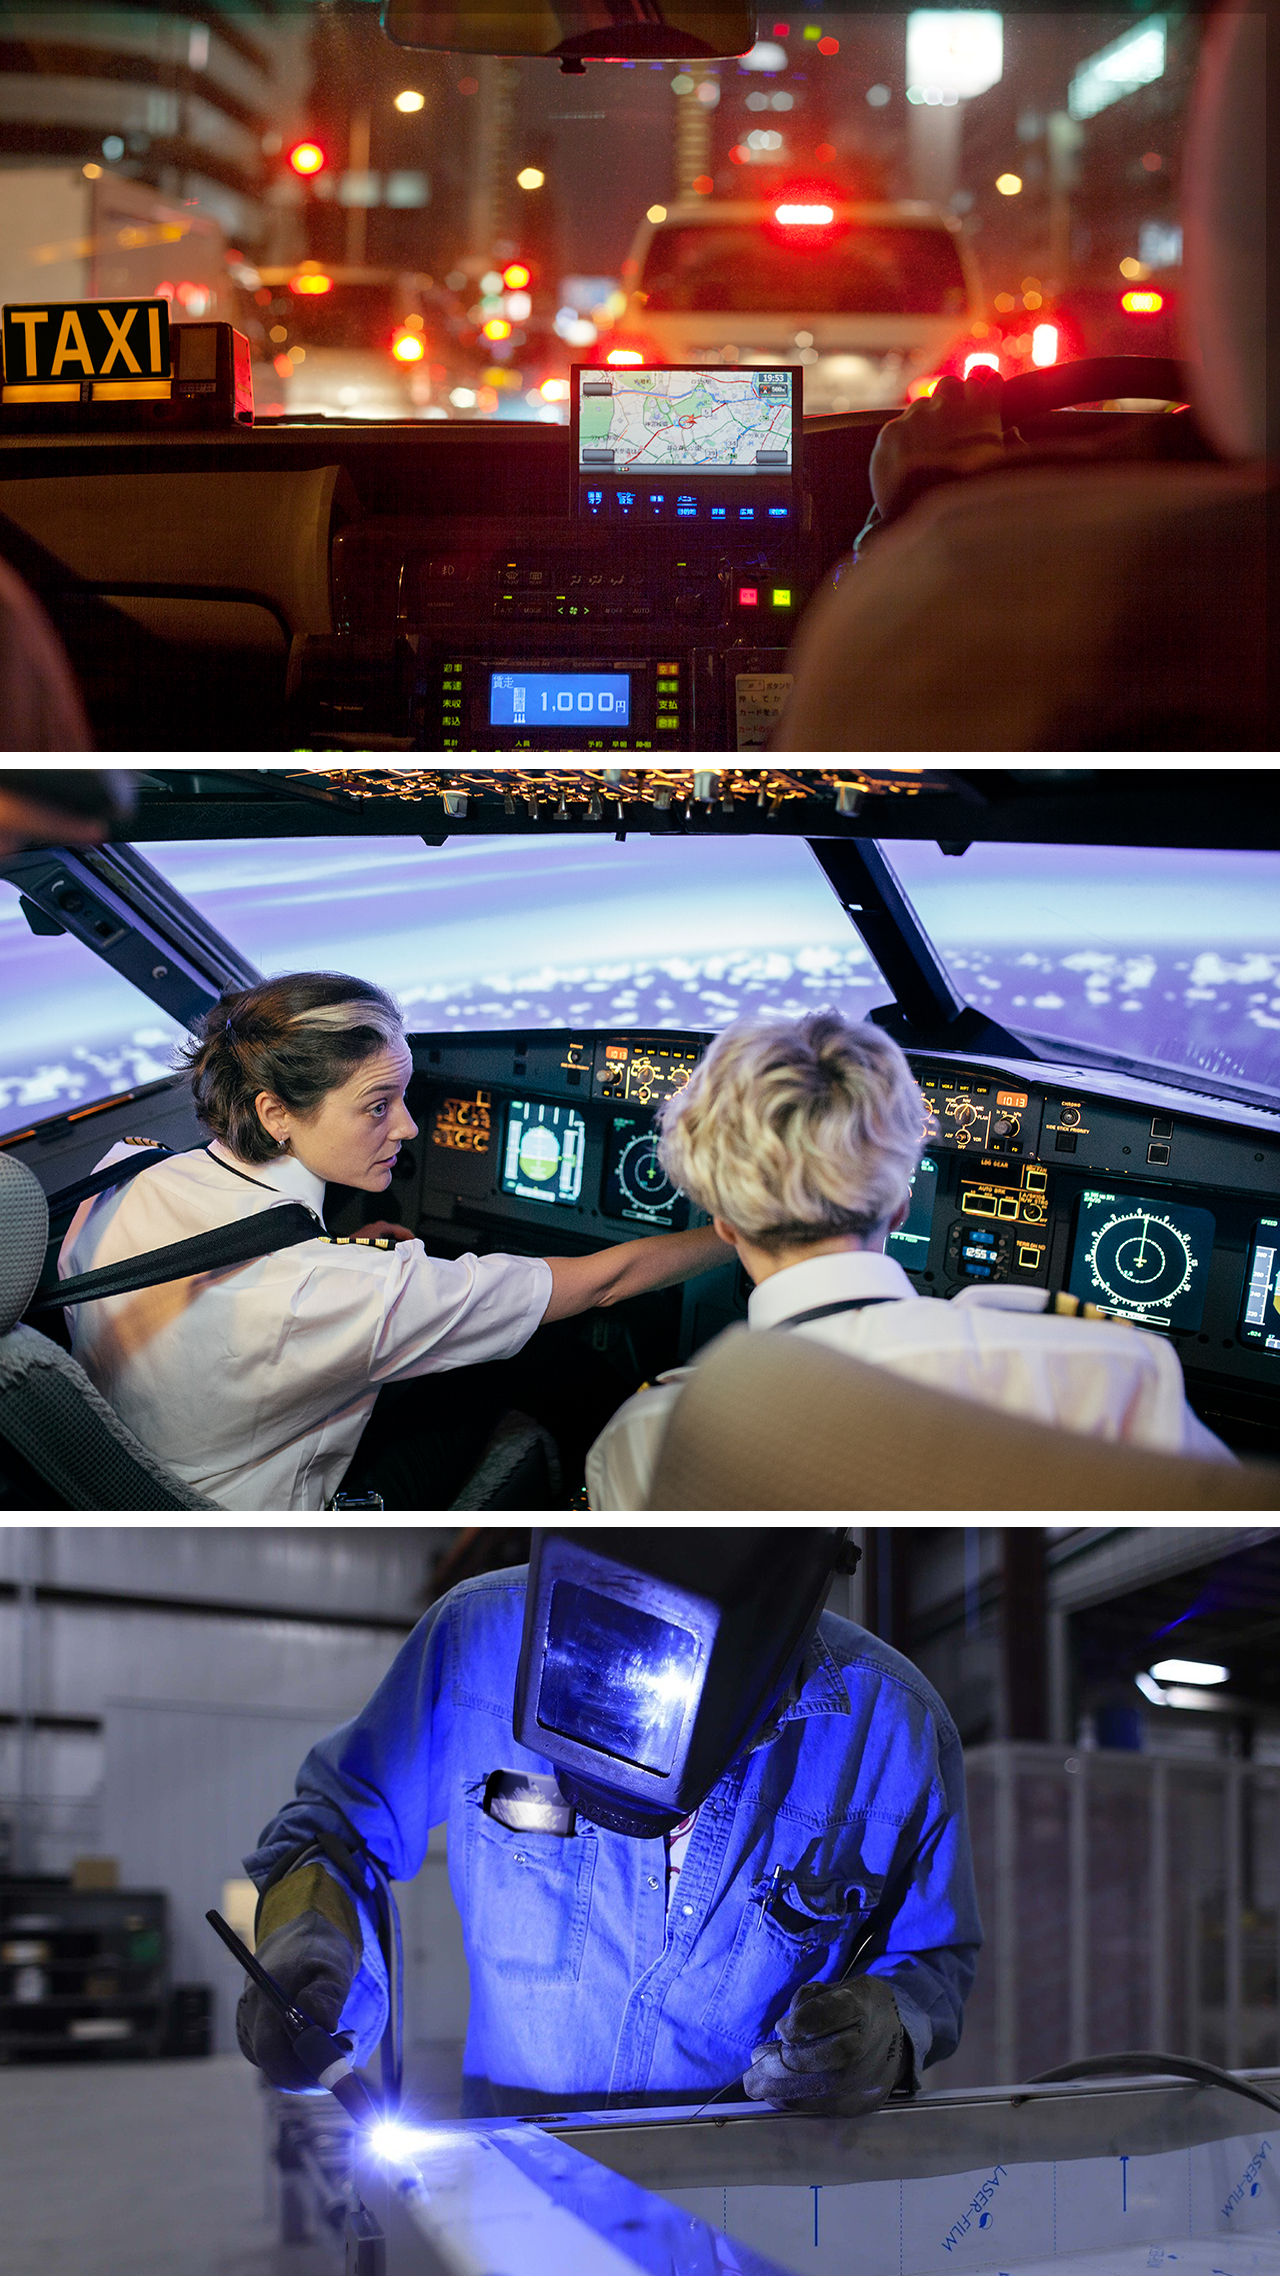 Tri su dijela fotografije koja pokazuju uporabu IKT-a u različitim zanimanjima (taksist, pilotkinja i zavarivač).